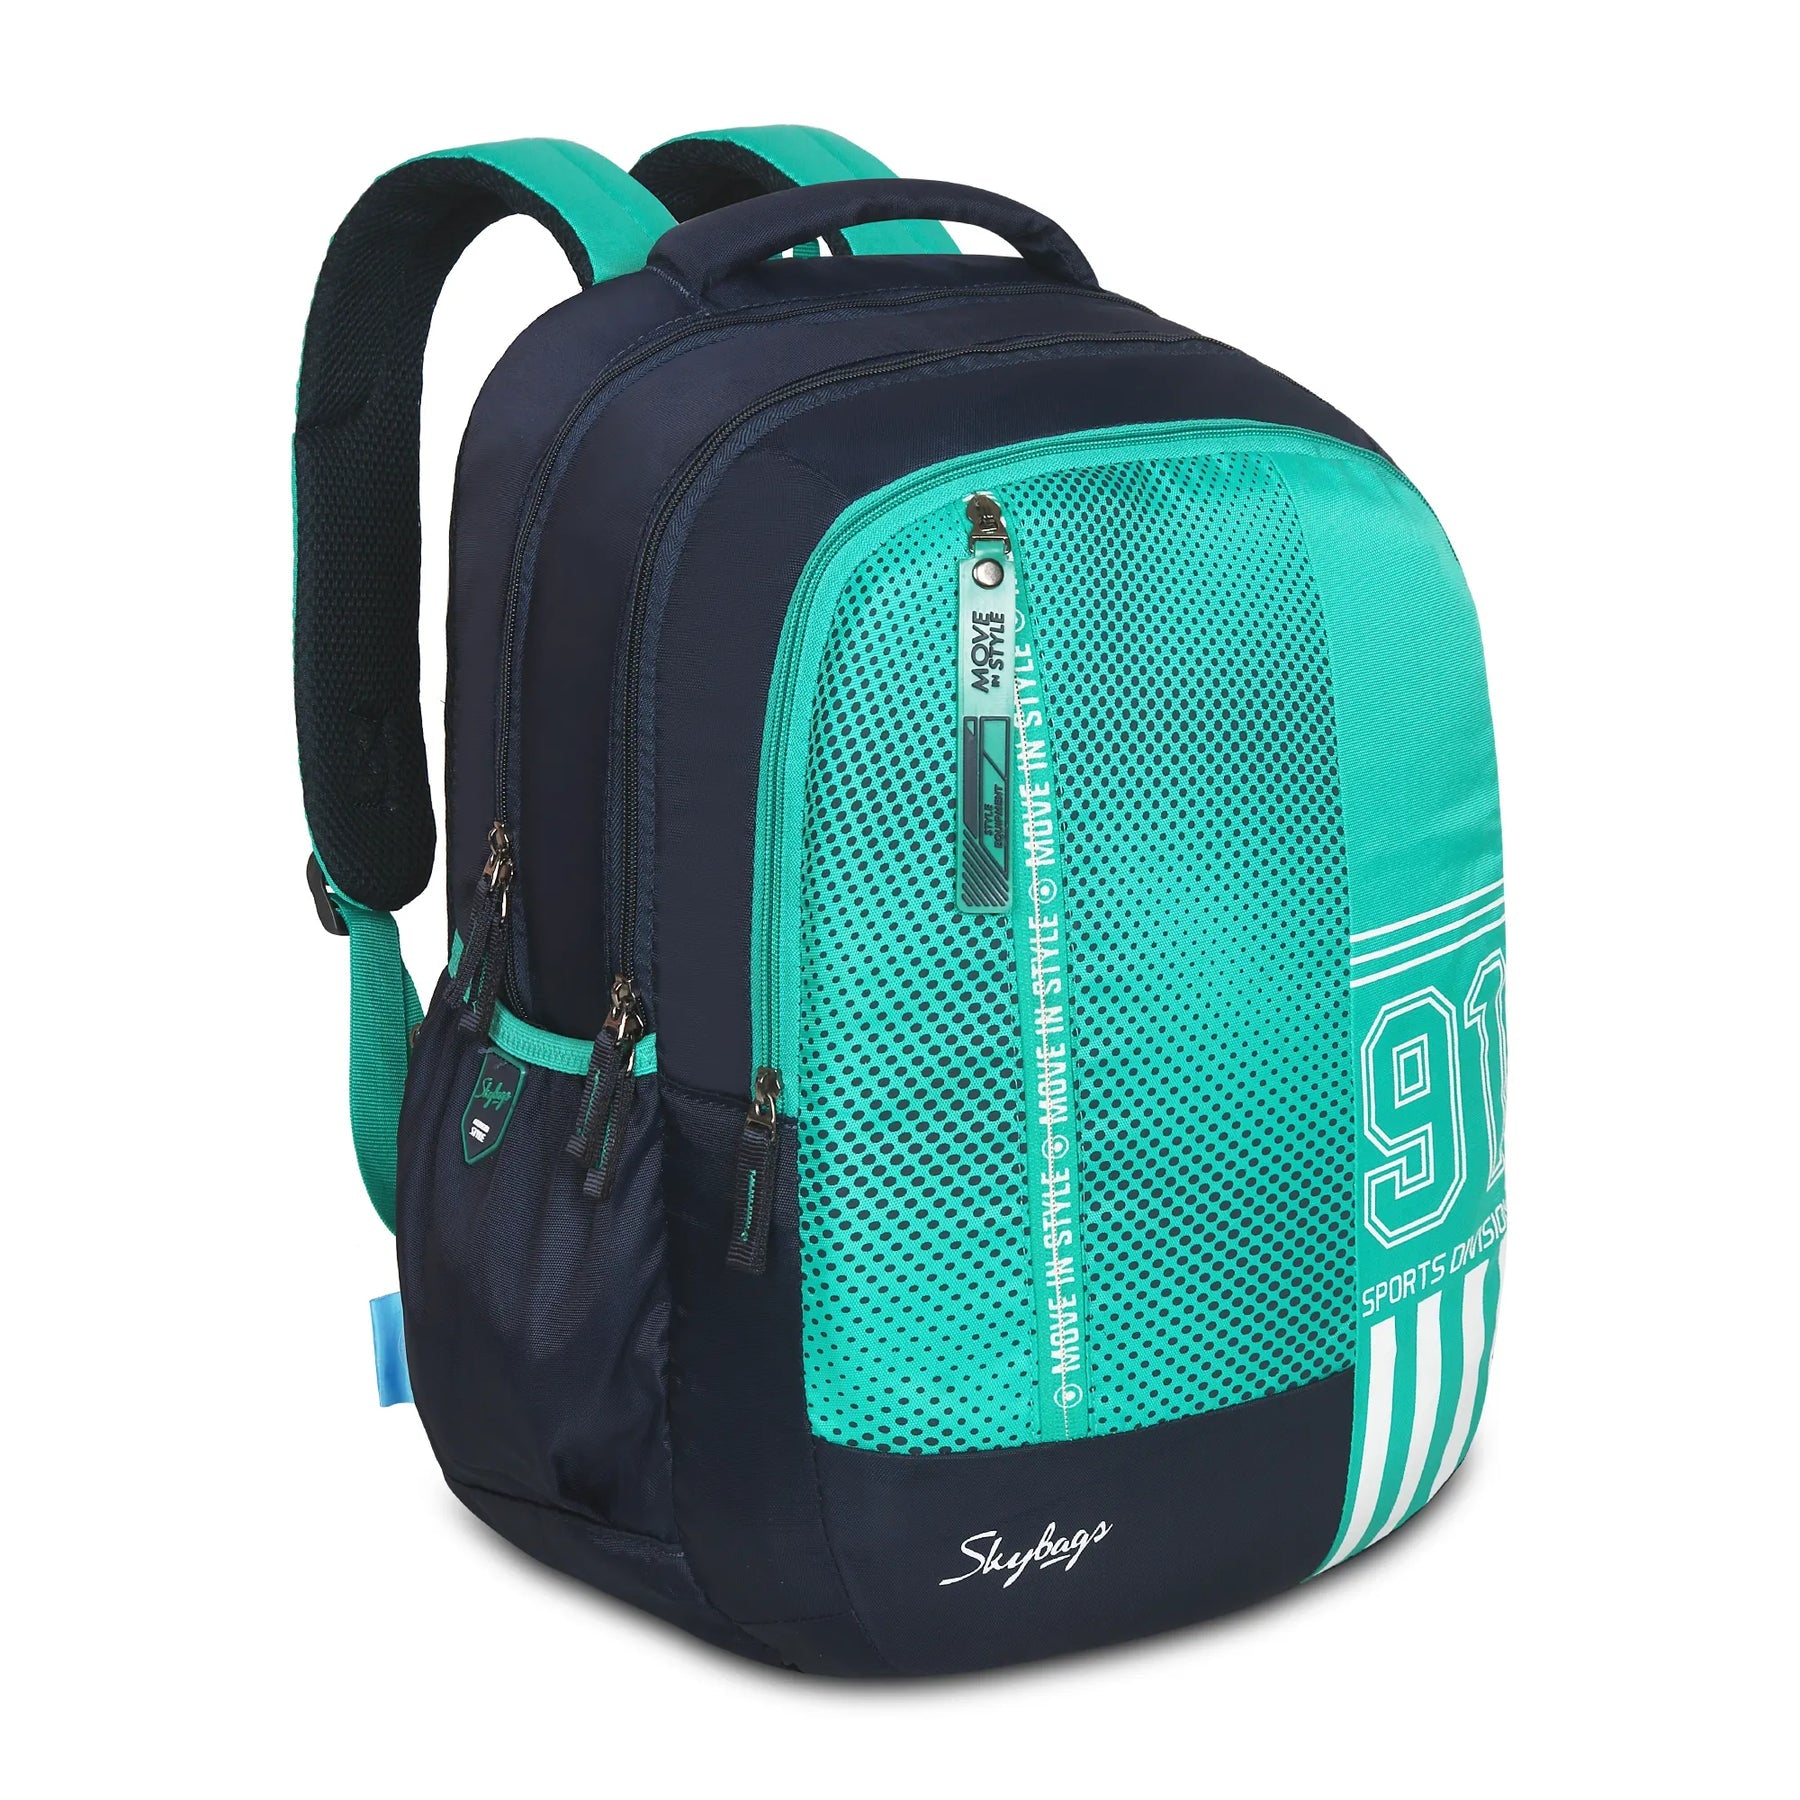 Skybags Shield School Backpack Teal | Bags & Sleeves | Halabh.com